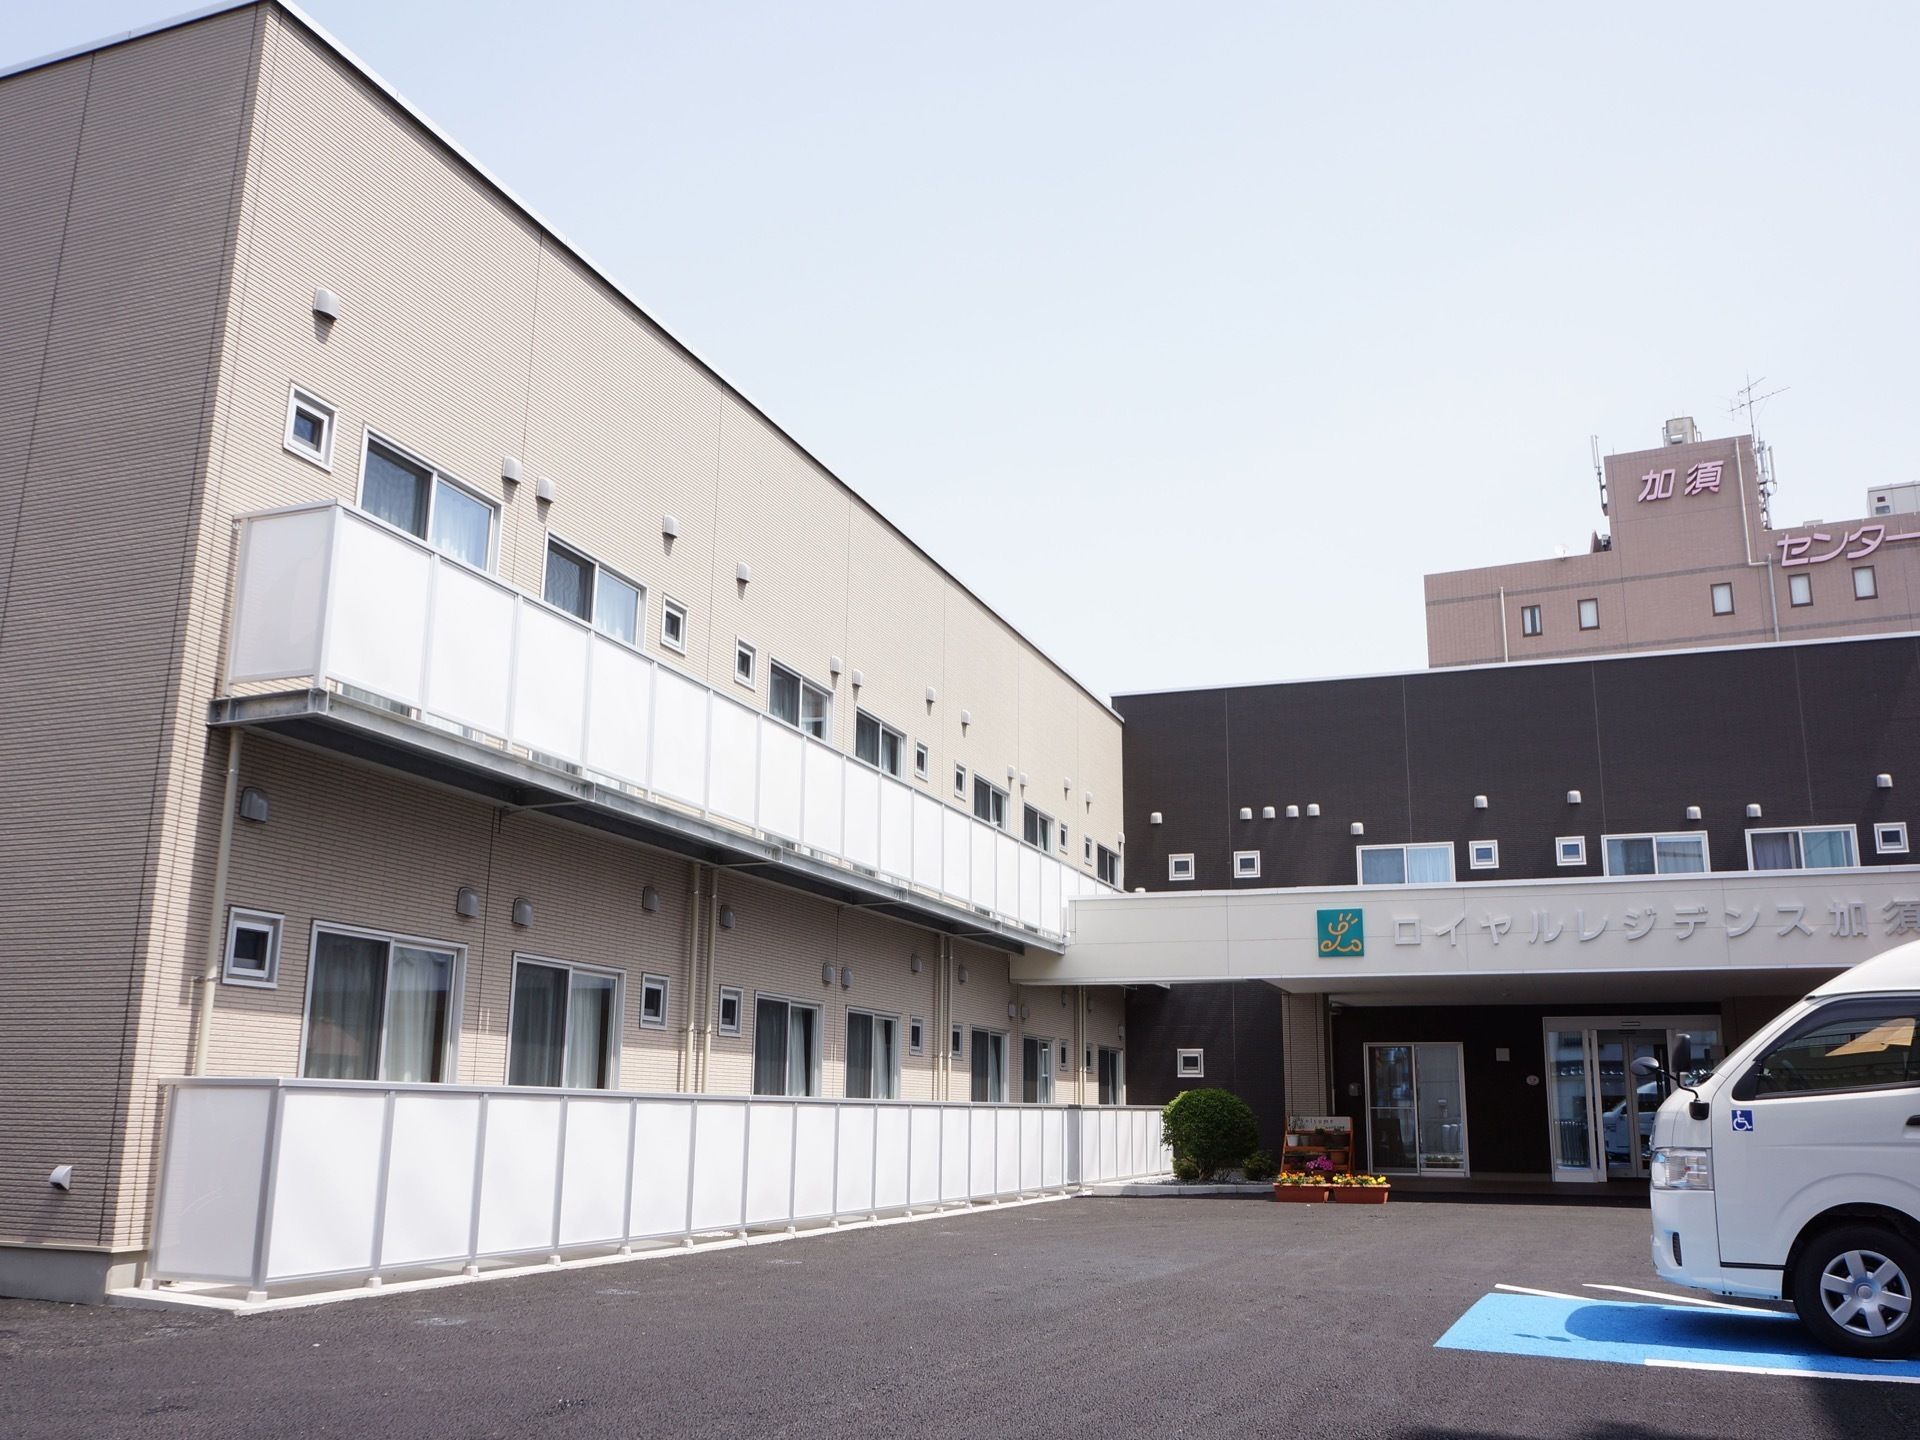 残り1室 8 1更新 ロイヤルレジデンス加須 加須市 360度パノラマ画像 みんなの介護